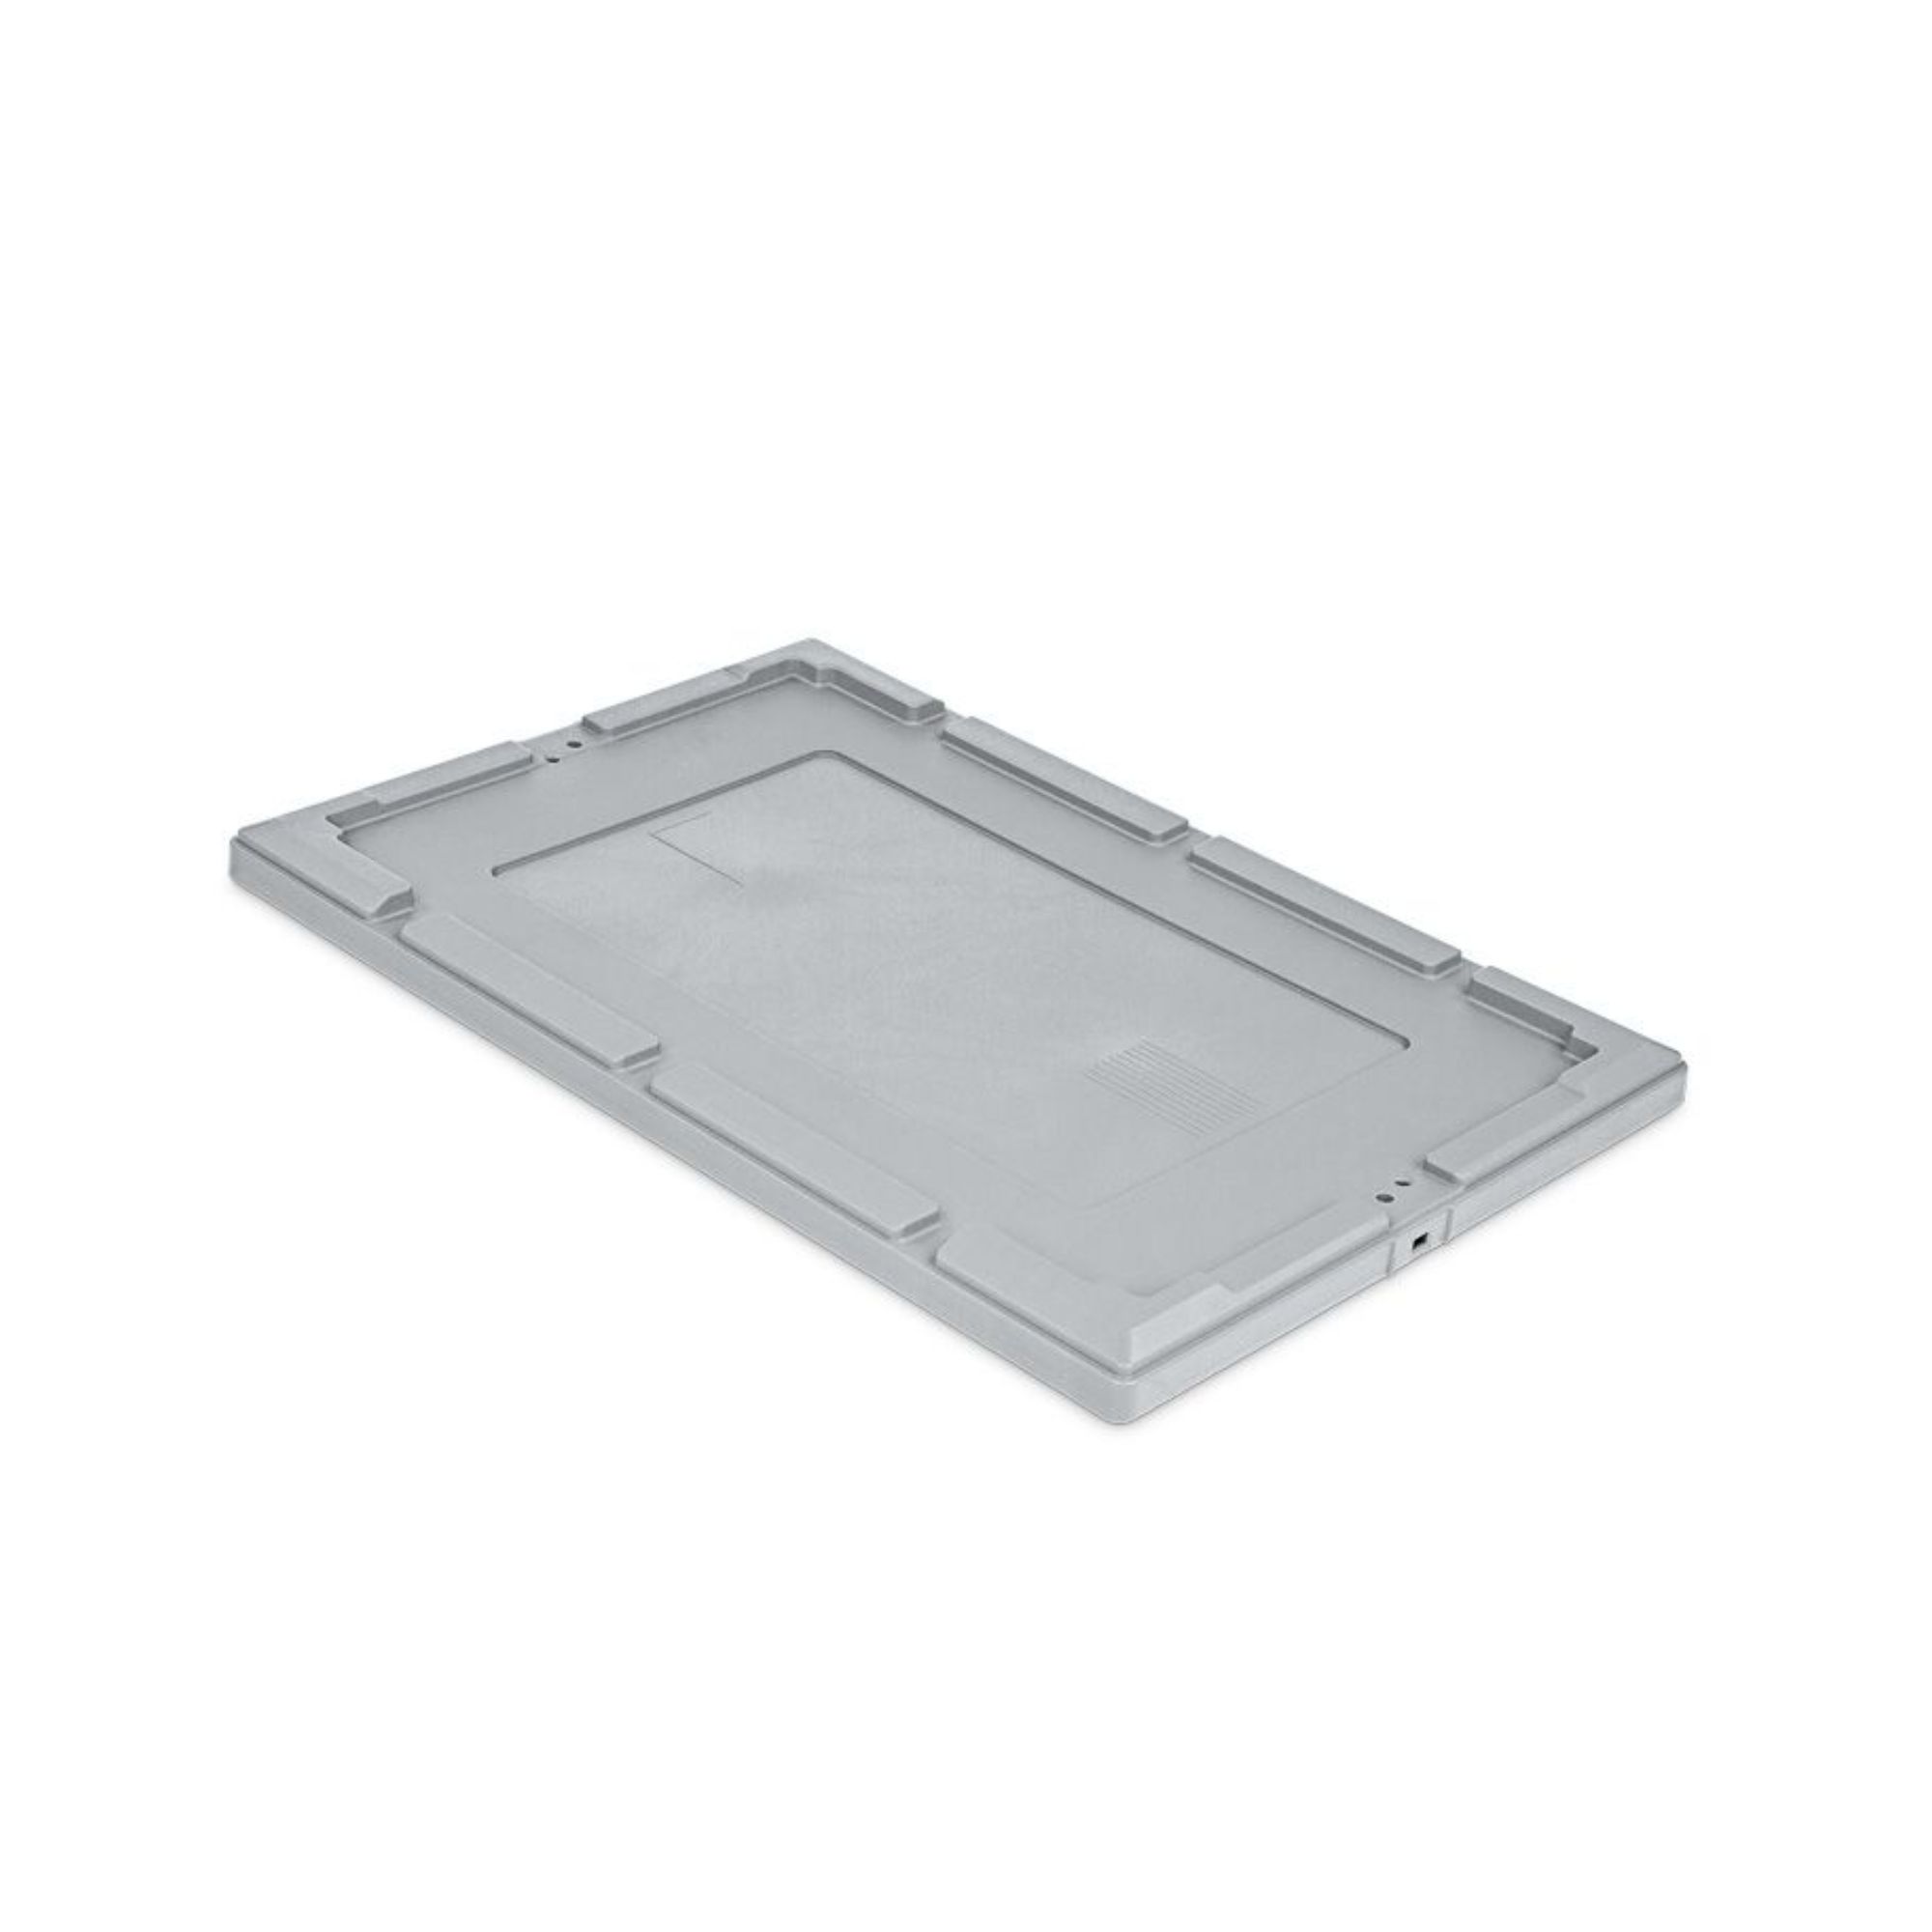 Auflagedeckel für Conical Mehrweg-Stapelbehälter Grau | BxT 40x60cm | Lagerbox Eurobox Transportbox Transportbehälter Stapelbehälter